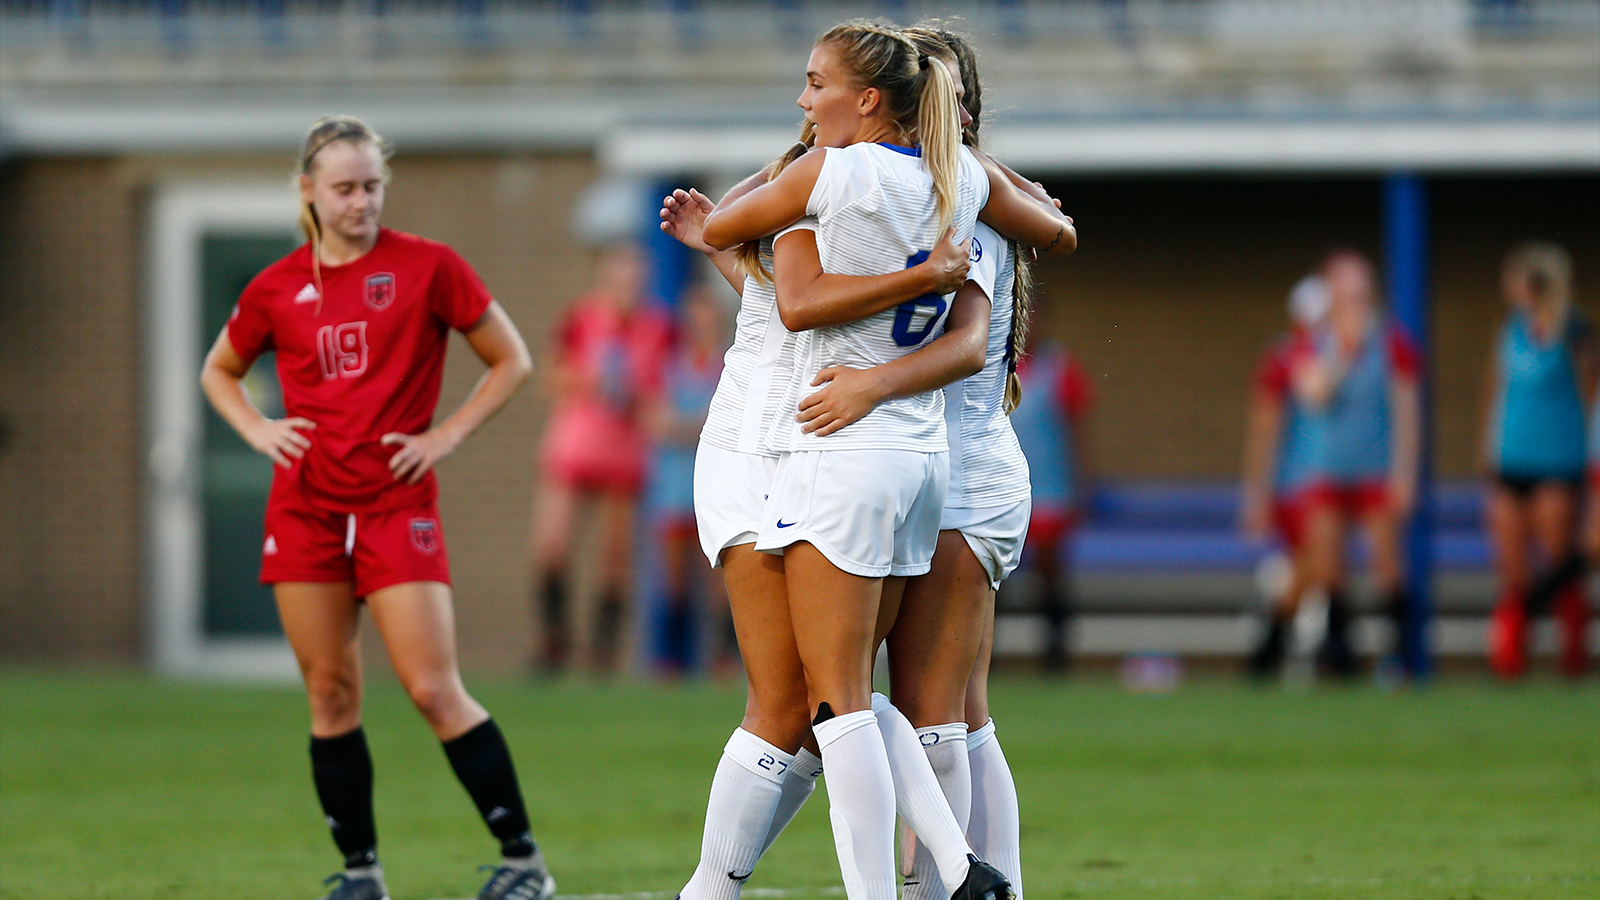 UK Women’s Soccer Tops Louisiana Lafayette, 5-0